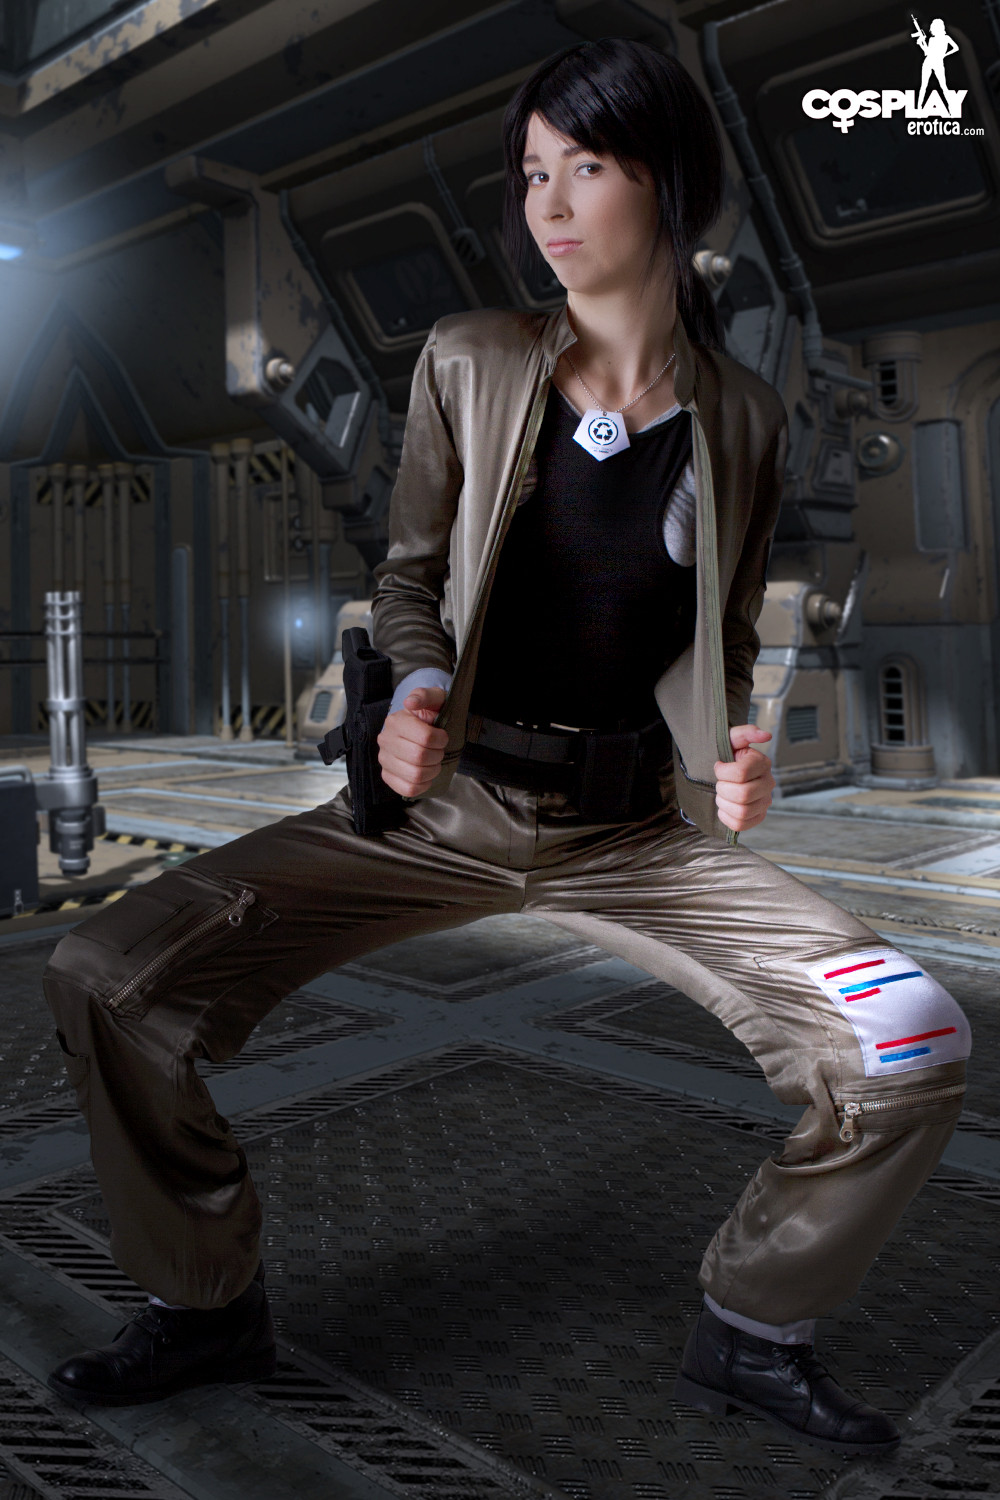 Stacy aime battlestar et s'habiller comme les personnages en cosplay l'excite.
 #75734368